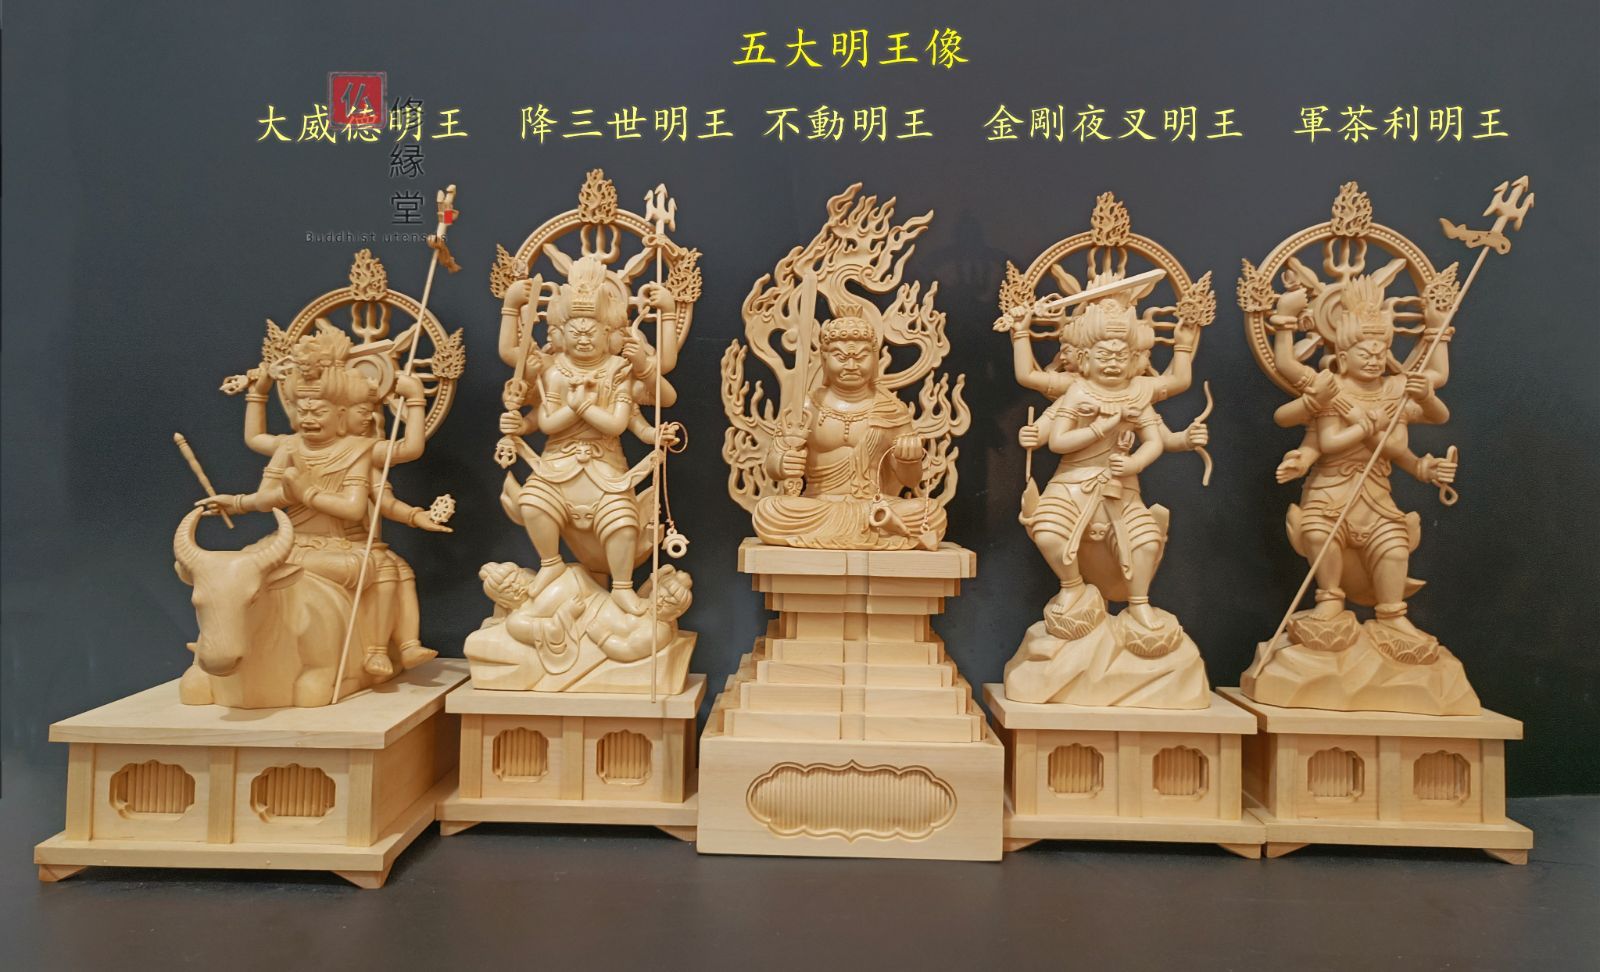 修縁堂】最高級 木彫仏像 五大明王像一式 彫刻 一刀彫 天然木檜材 仏教